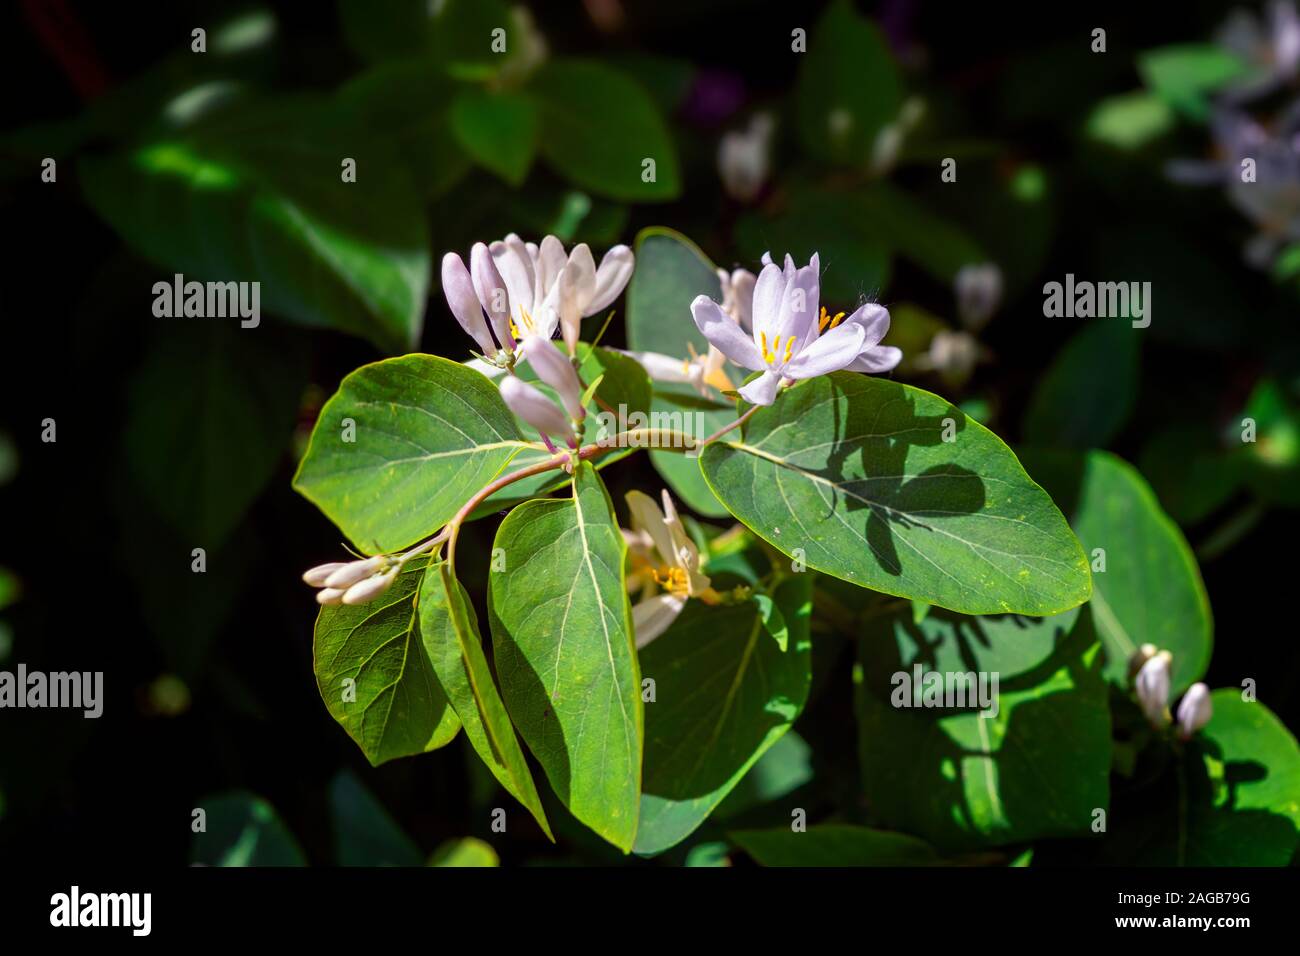 Frangula alnus alder buckthorn, glossy buckthorn, breaking buckthorn flowering bush, blooming white flower close up detail, dark green leaves blurry b Stock Photo